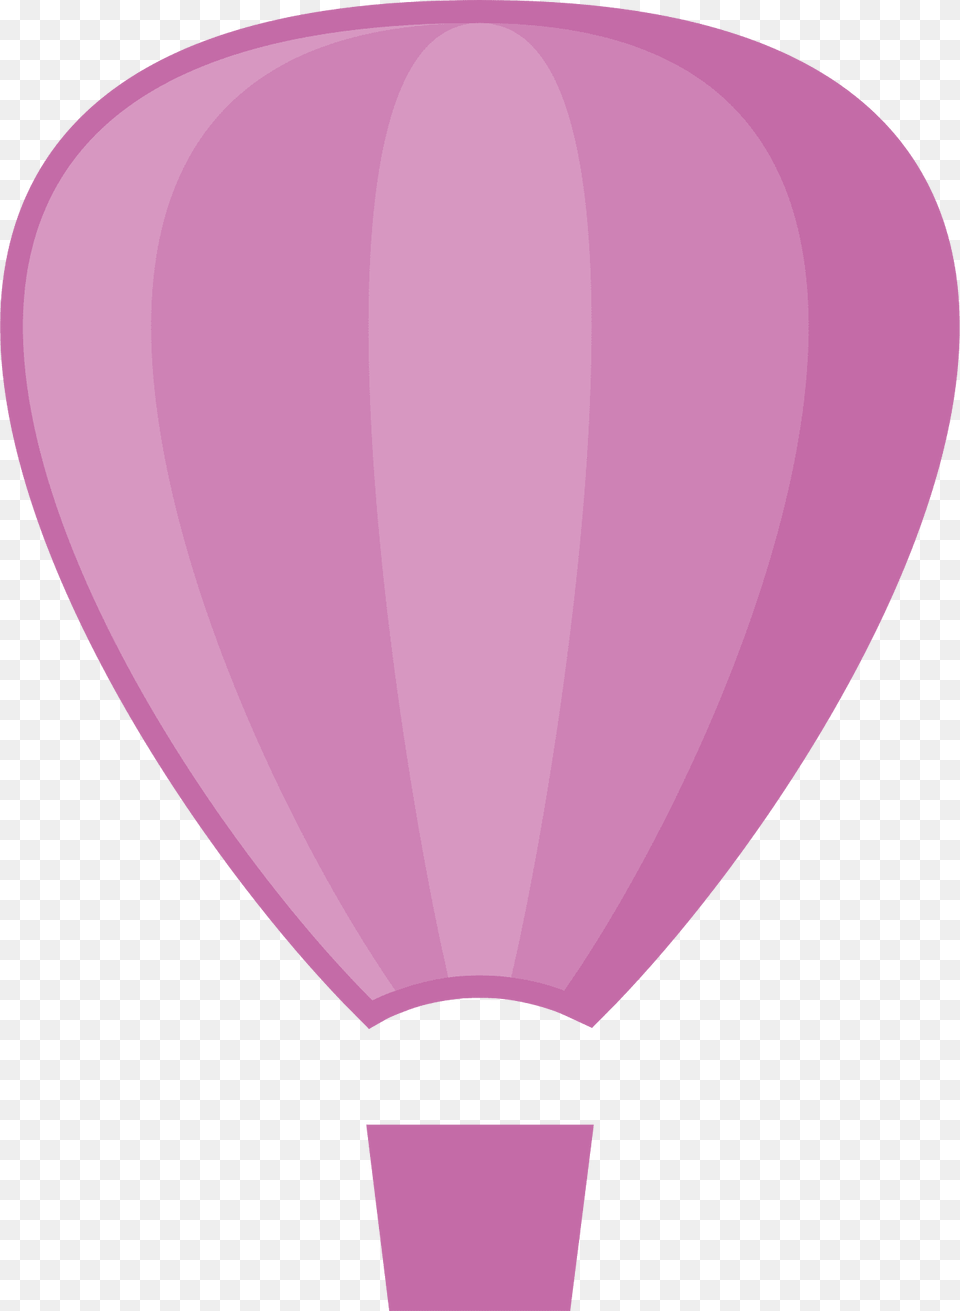 Balloons Clipart, Aircraft, Balloon, Hot Air Balloon, Transportation Free Png Download